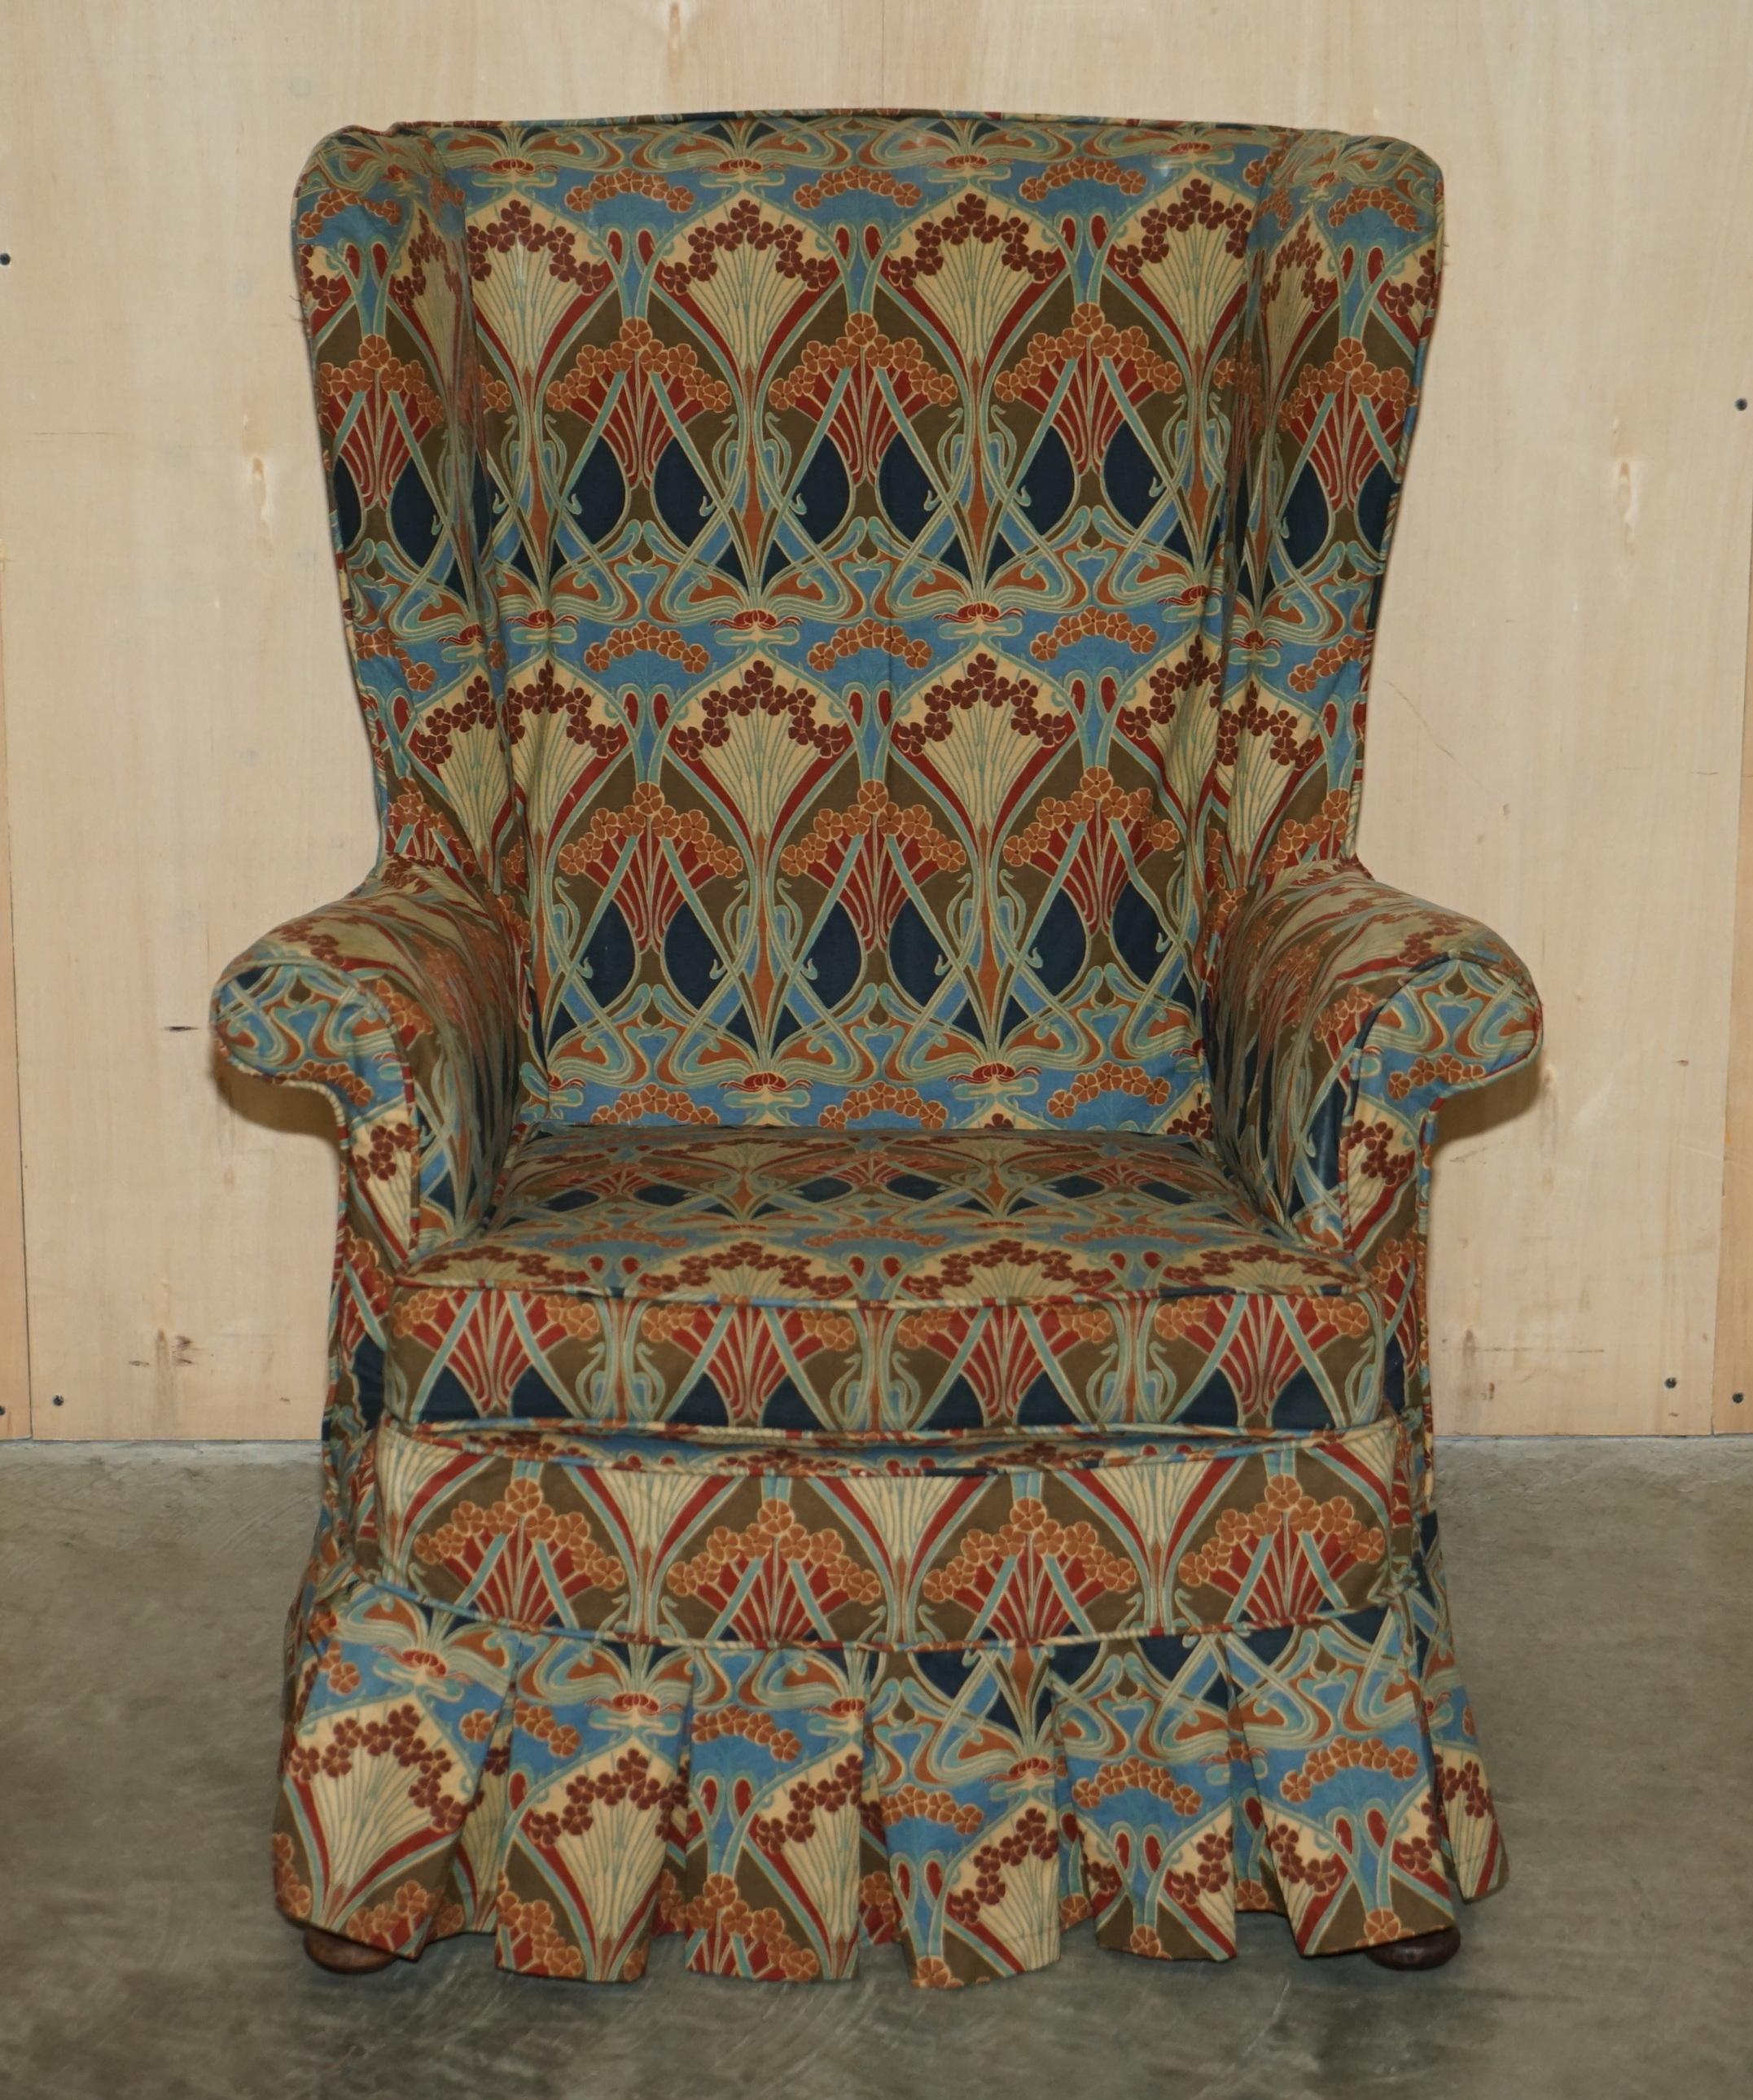 Royal House Antiques

Royal House Antiques a le plaisir de proposer à la vente un superbe fauteuil anglais Wingback des années 1930 avec une housse amovible en tissu Ianthe de Liberty's London. 

Veuillez noter que les frais de livraison indiqués